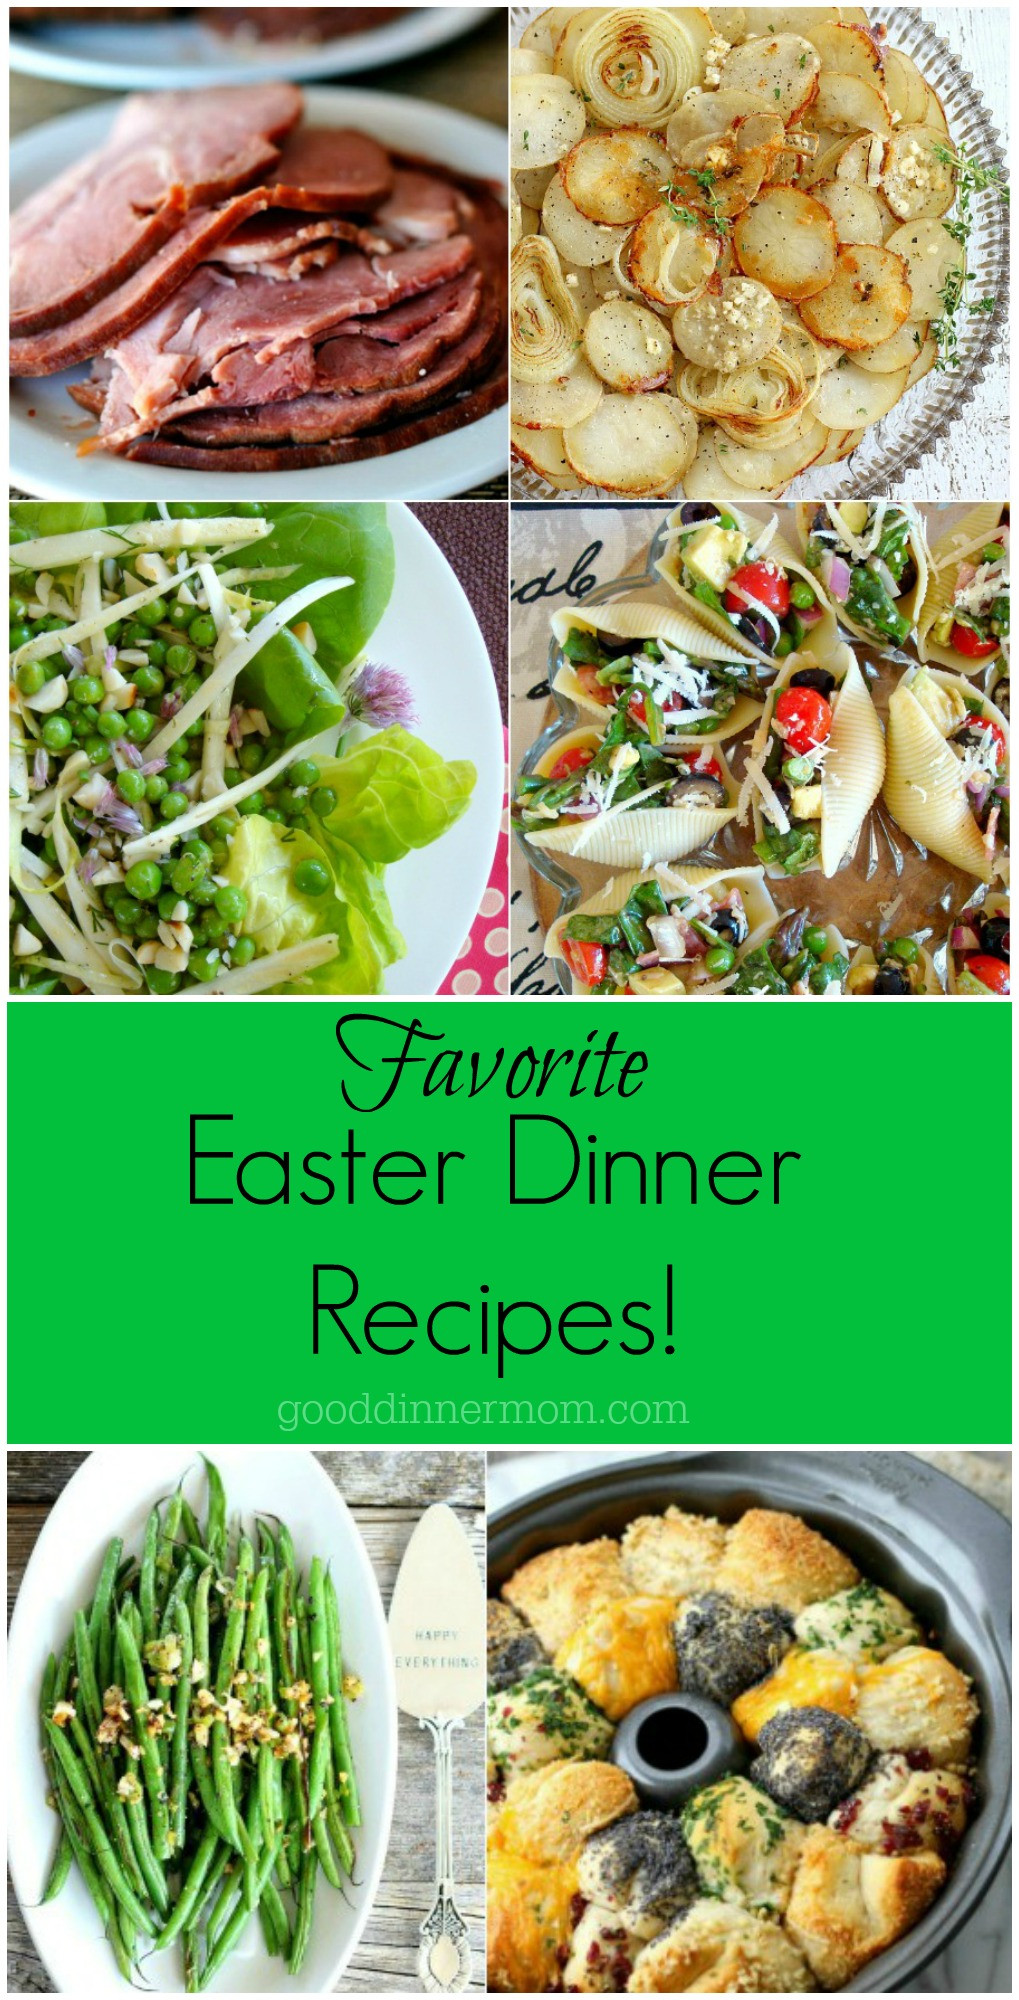 Good Easter Dinner Ideas
 Easter Dinner Recipes – Good Dinner Mom